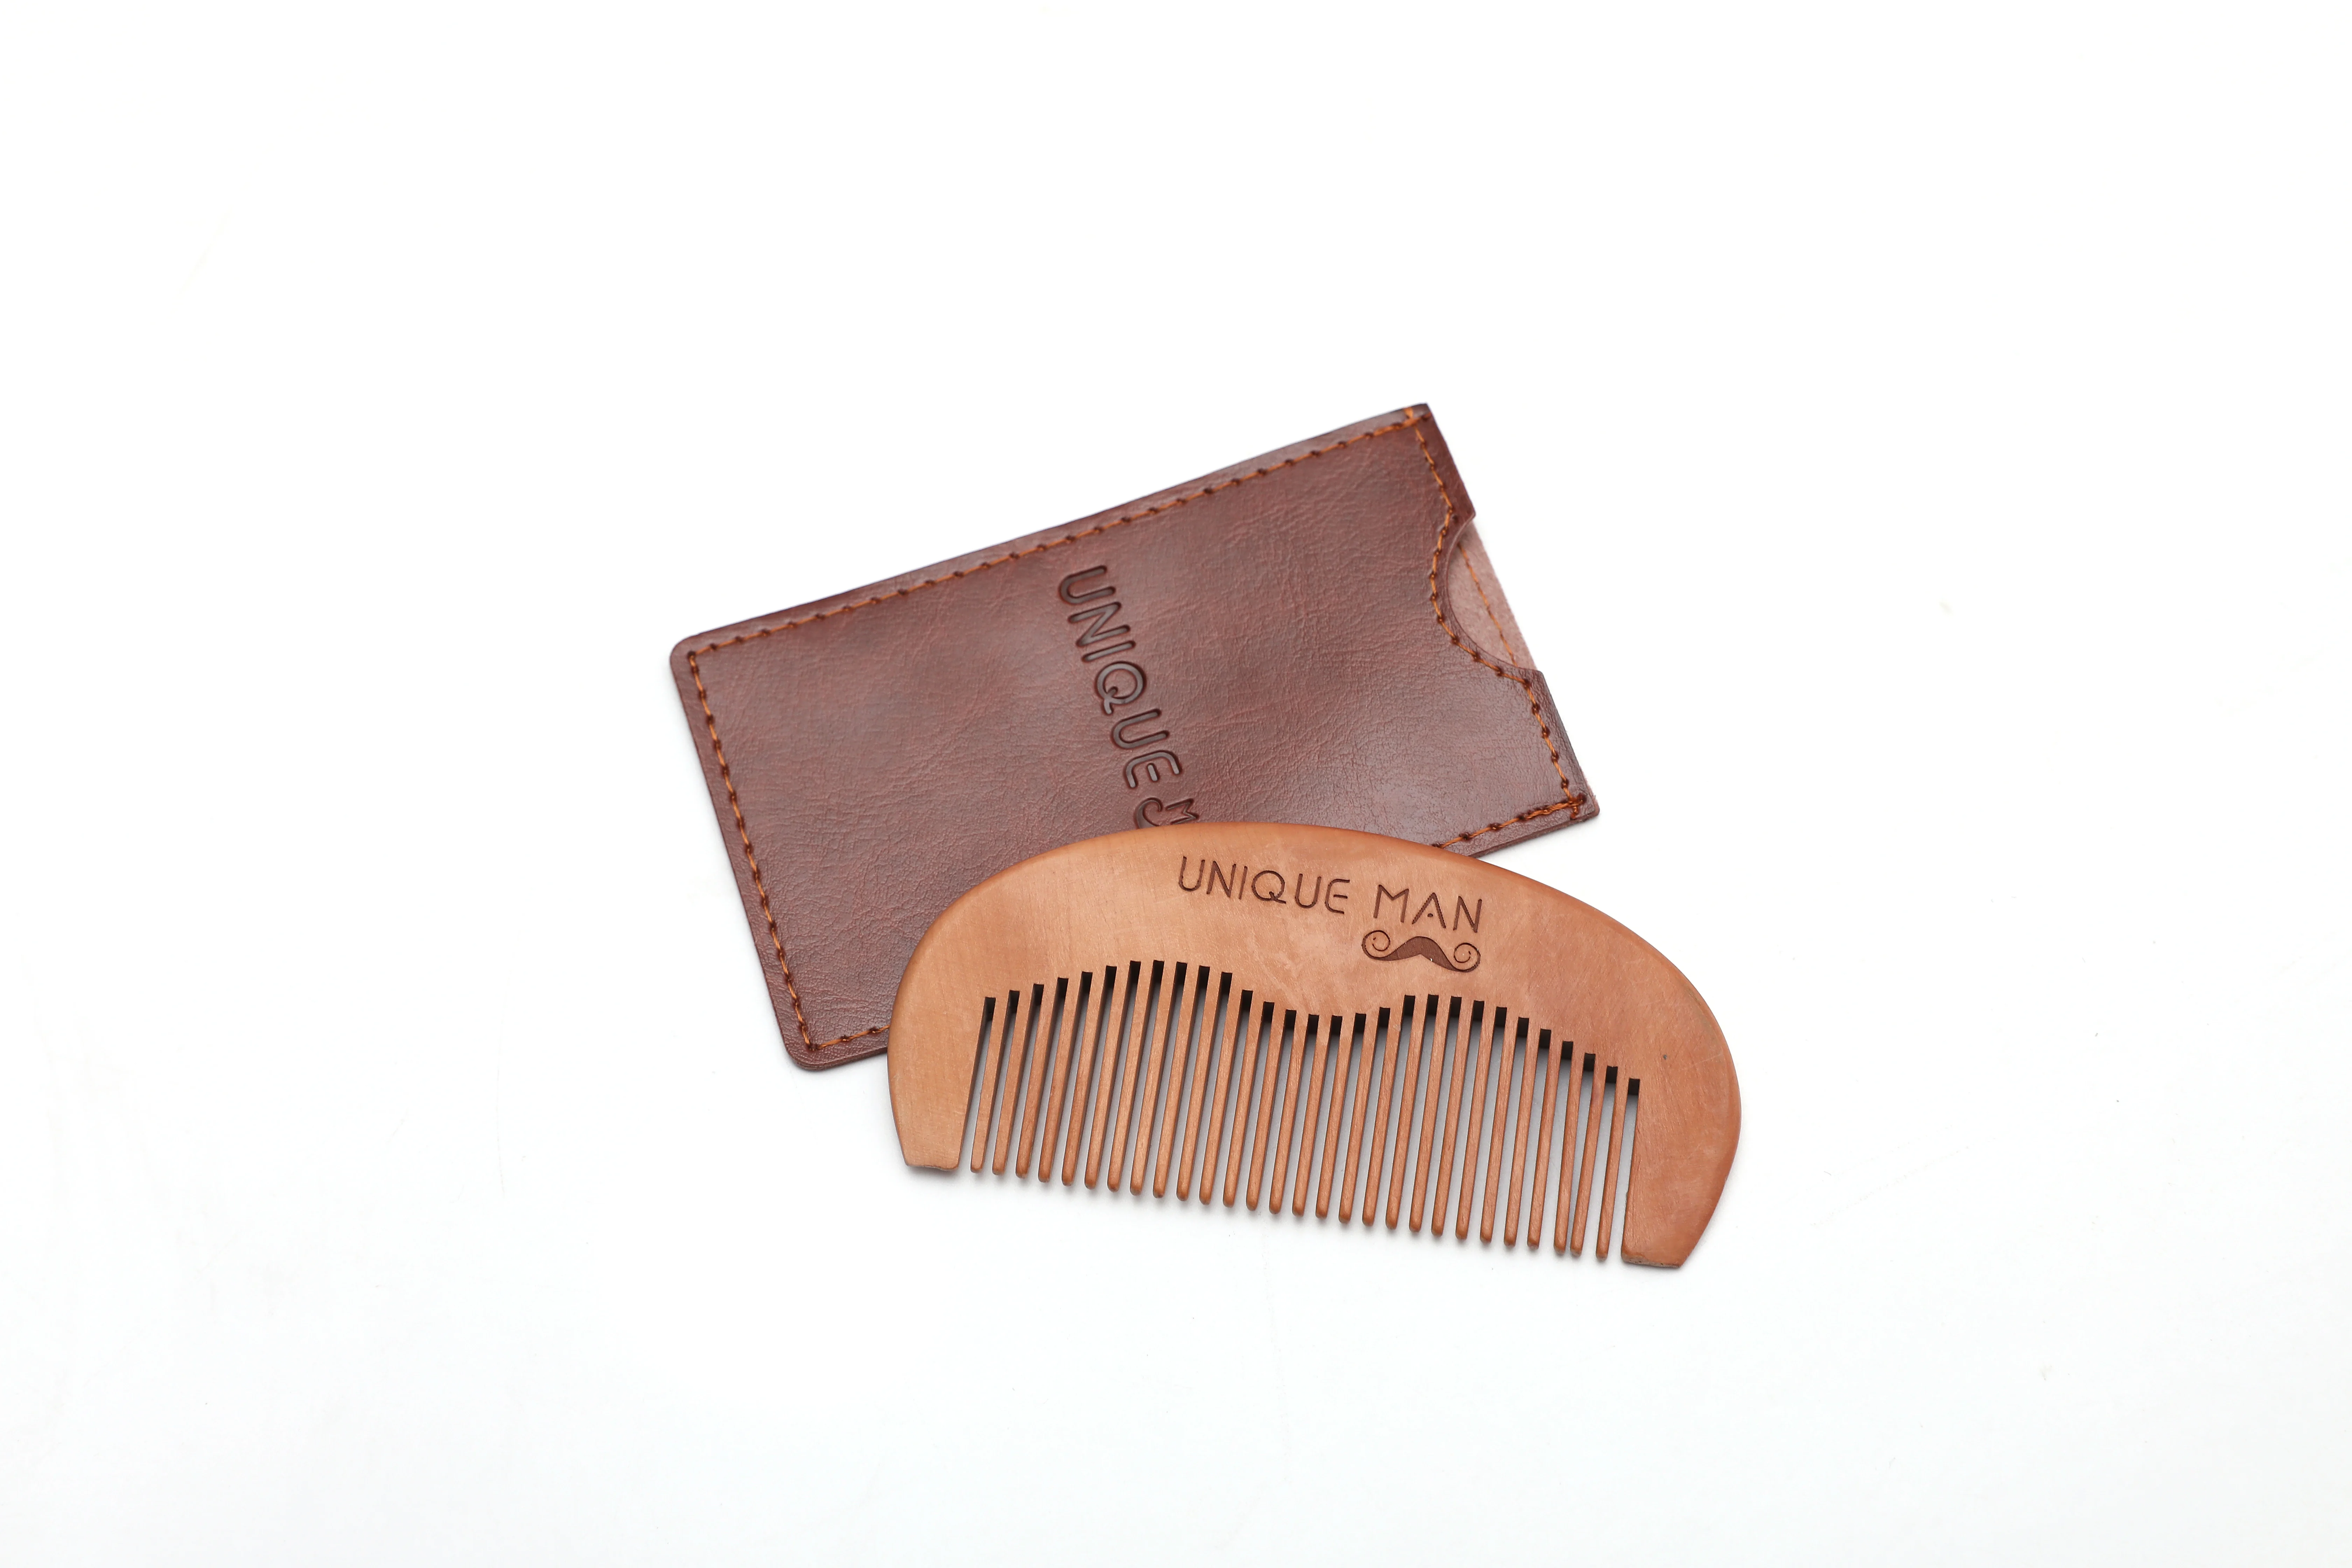 Men Beard Straightening Comb Wooden Handle Shaving Comb Wooden Beard Comb For Men's Beard Care